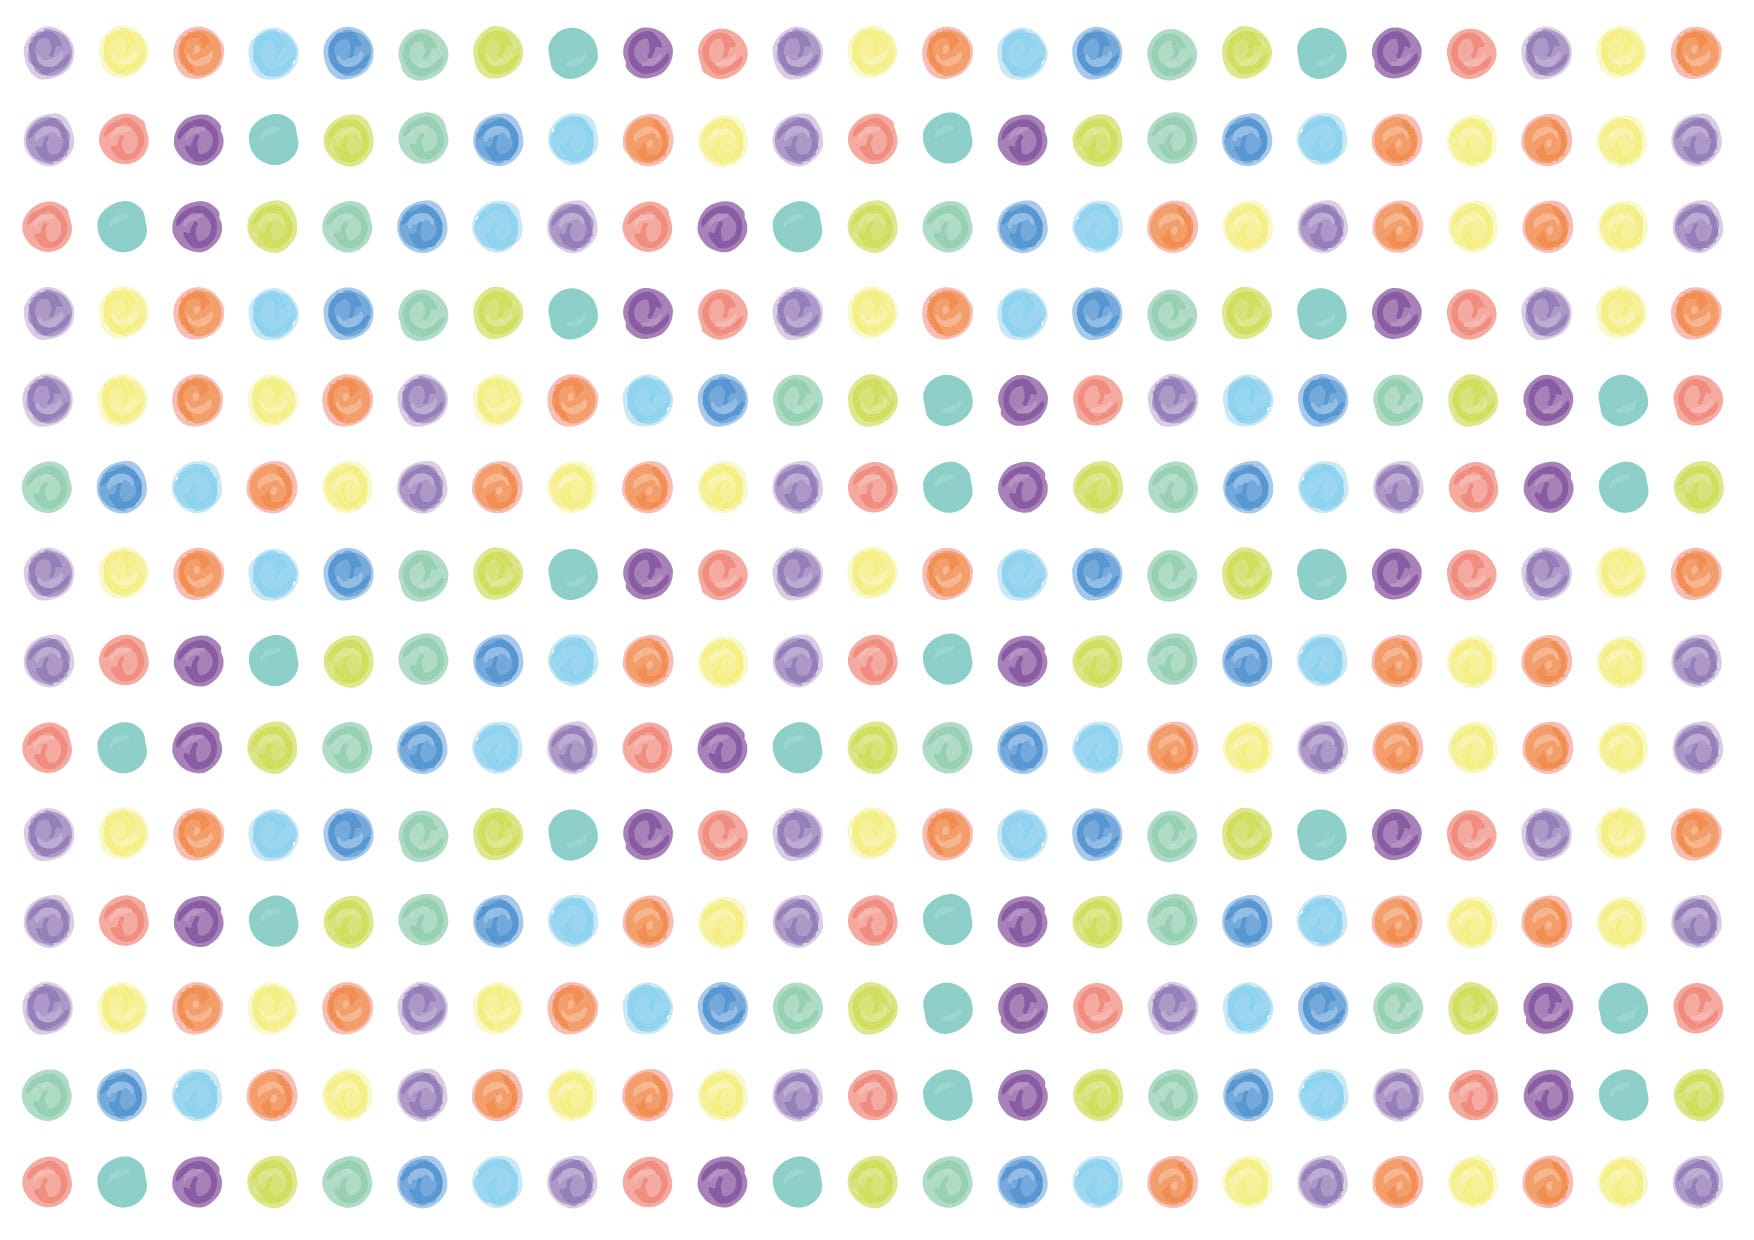 可愛いイラスト無料 水玉 手書き カラフル 背景 Free Illustration Polka Dot Handwritten Colorful Background イラストダウンロード